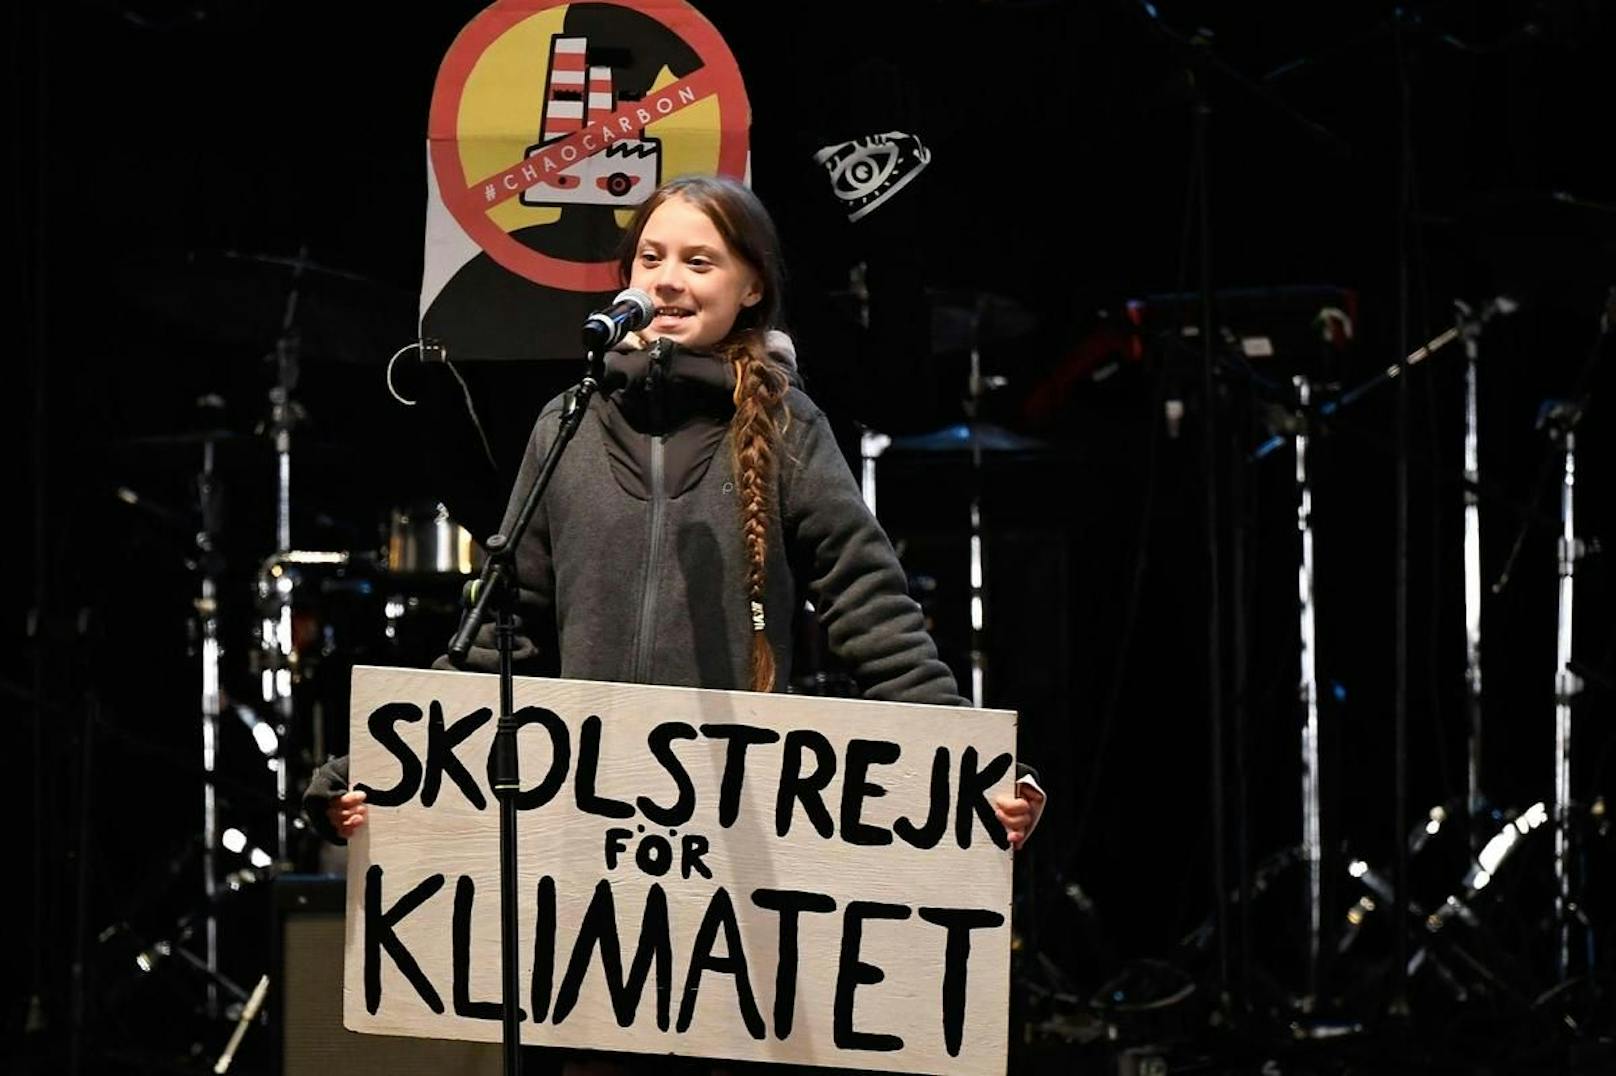 "Wir sehen uns am nächsten Klimastreik", schrieb Thunberg dazu.